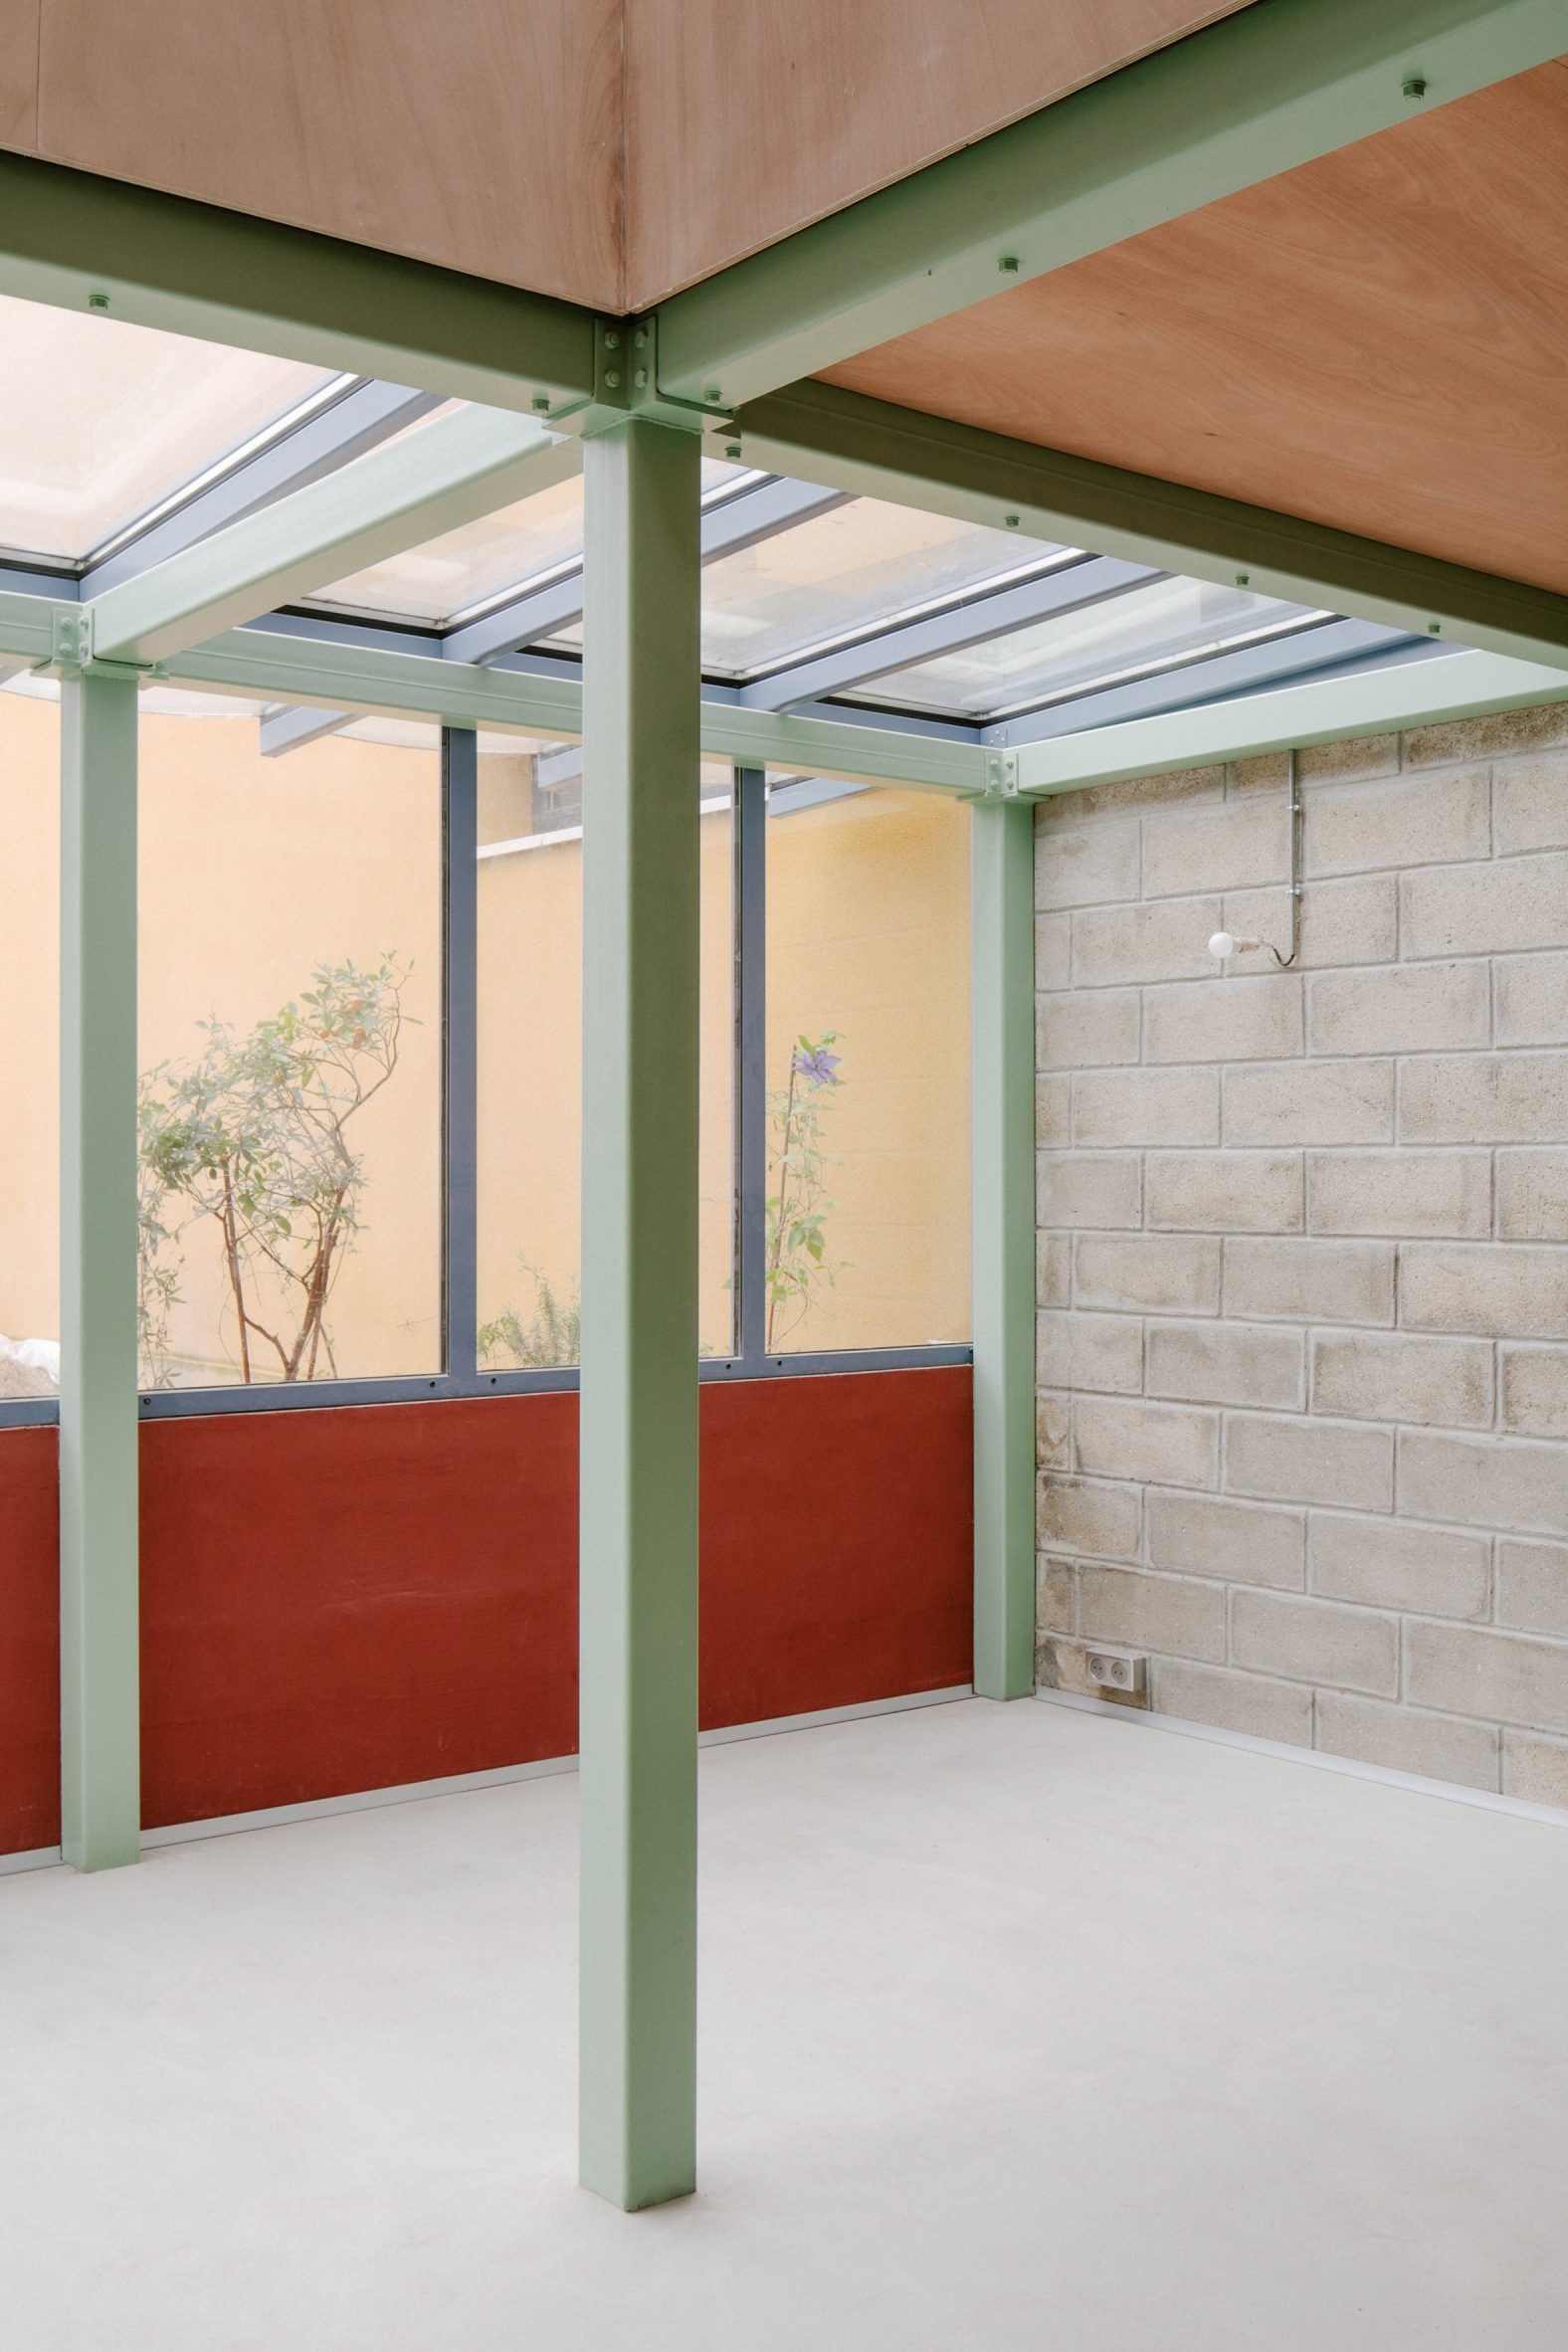 Garden room with blockwork walls and green steel structure